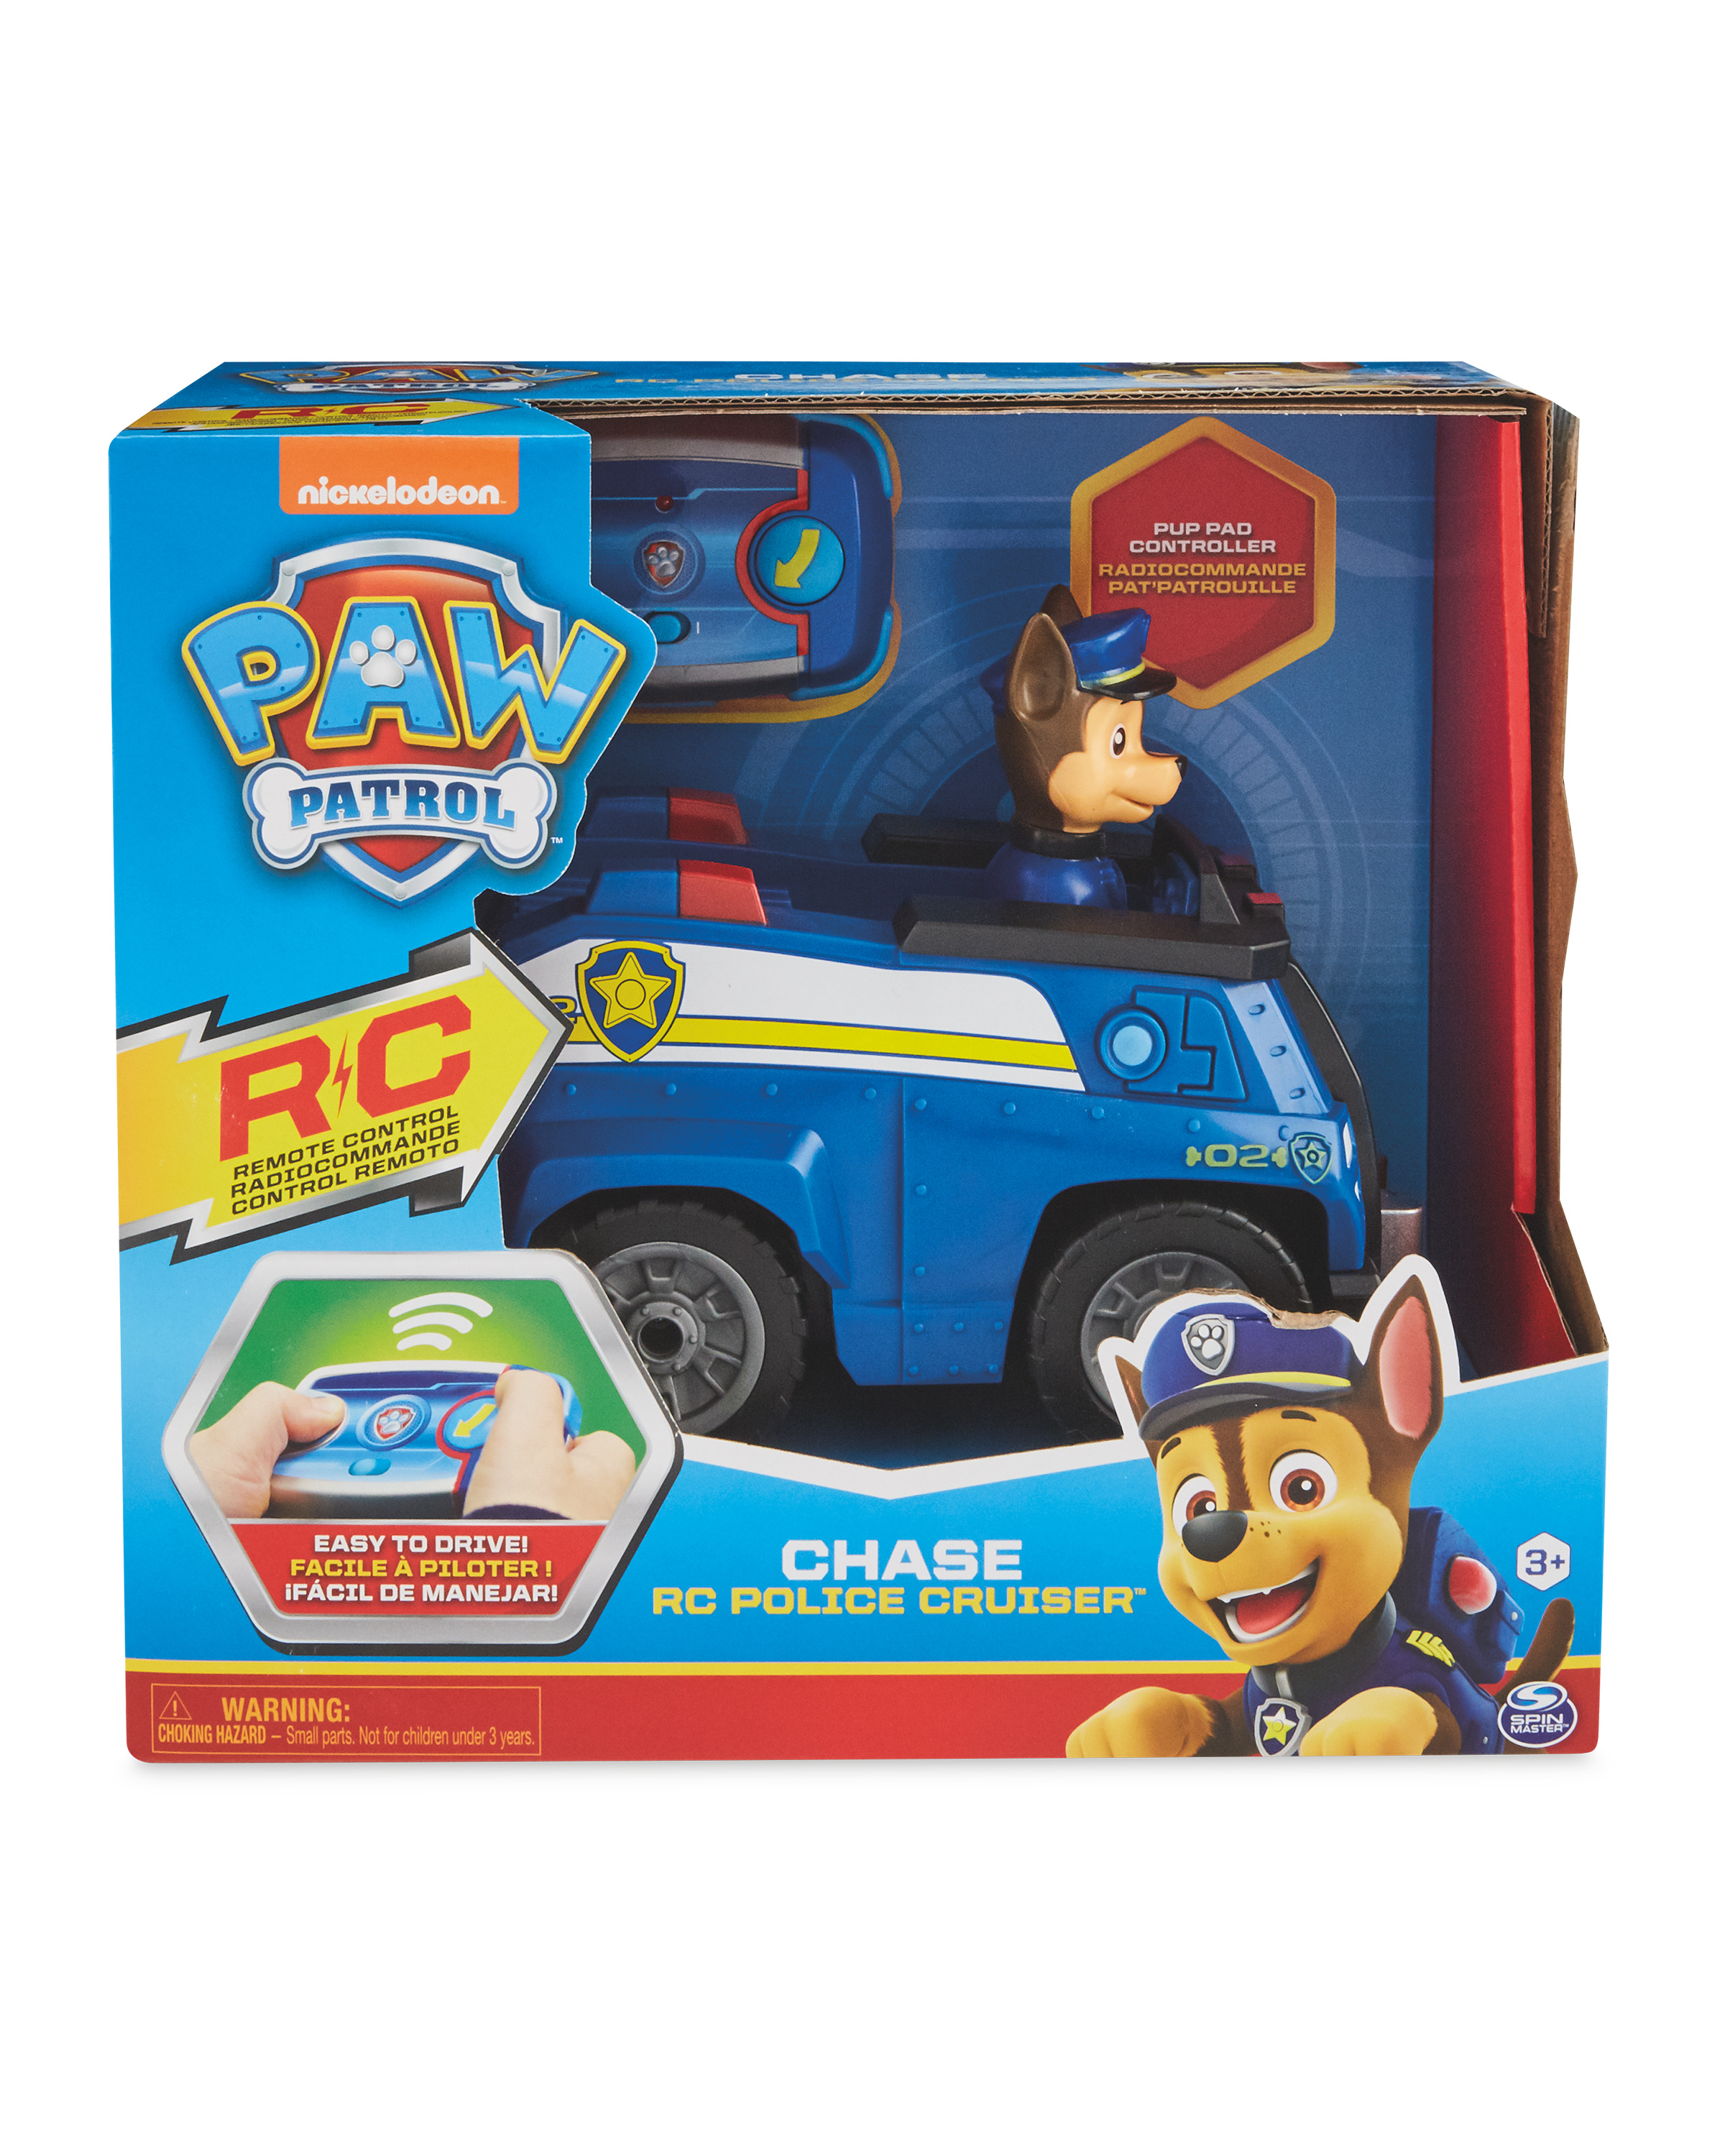 Chase's Paw Patrol Police Cruiser - UK